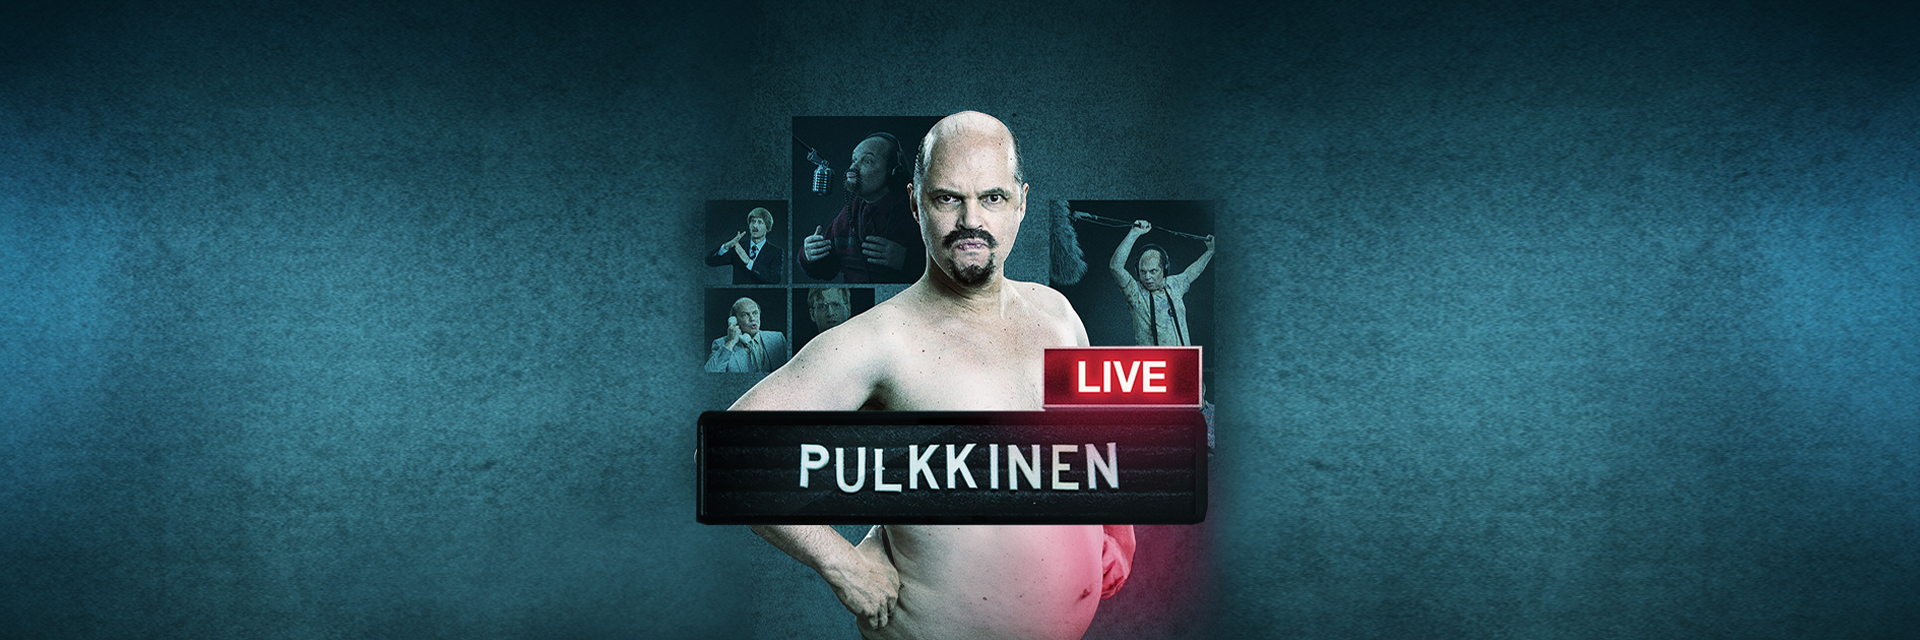 Hahmo Pulkkinen pullistelee lihaksiaan ylävartalo paljaana.